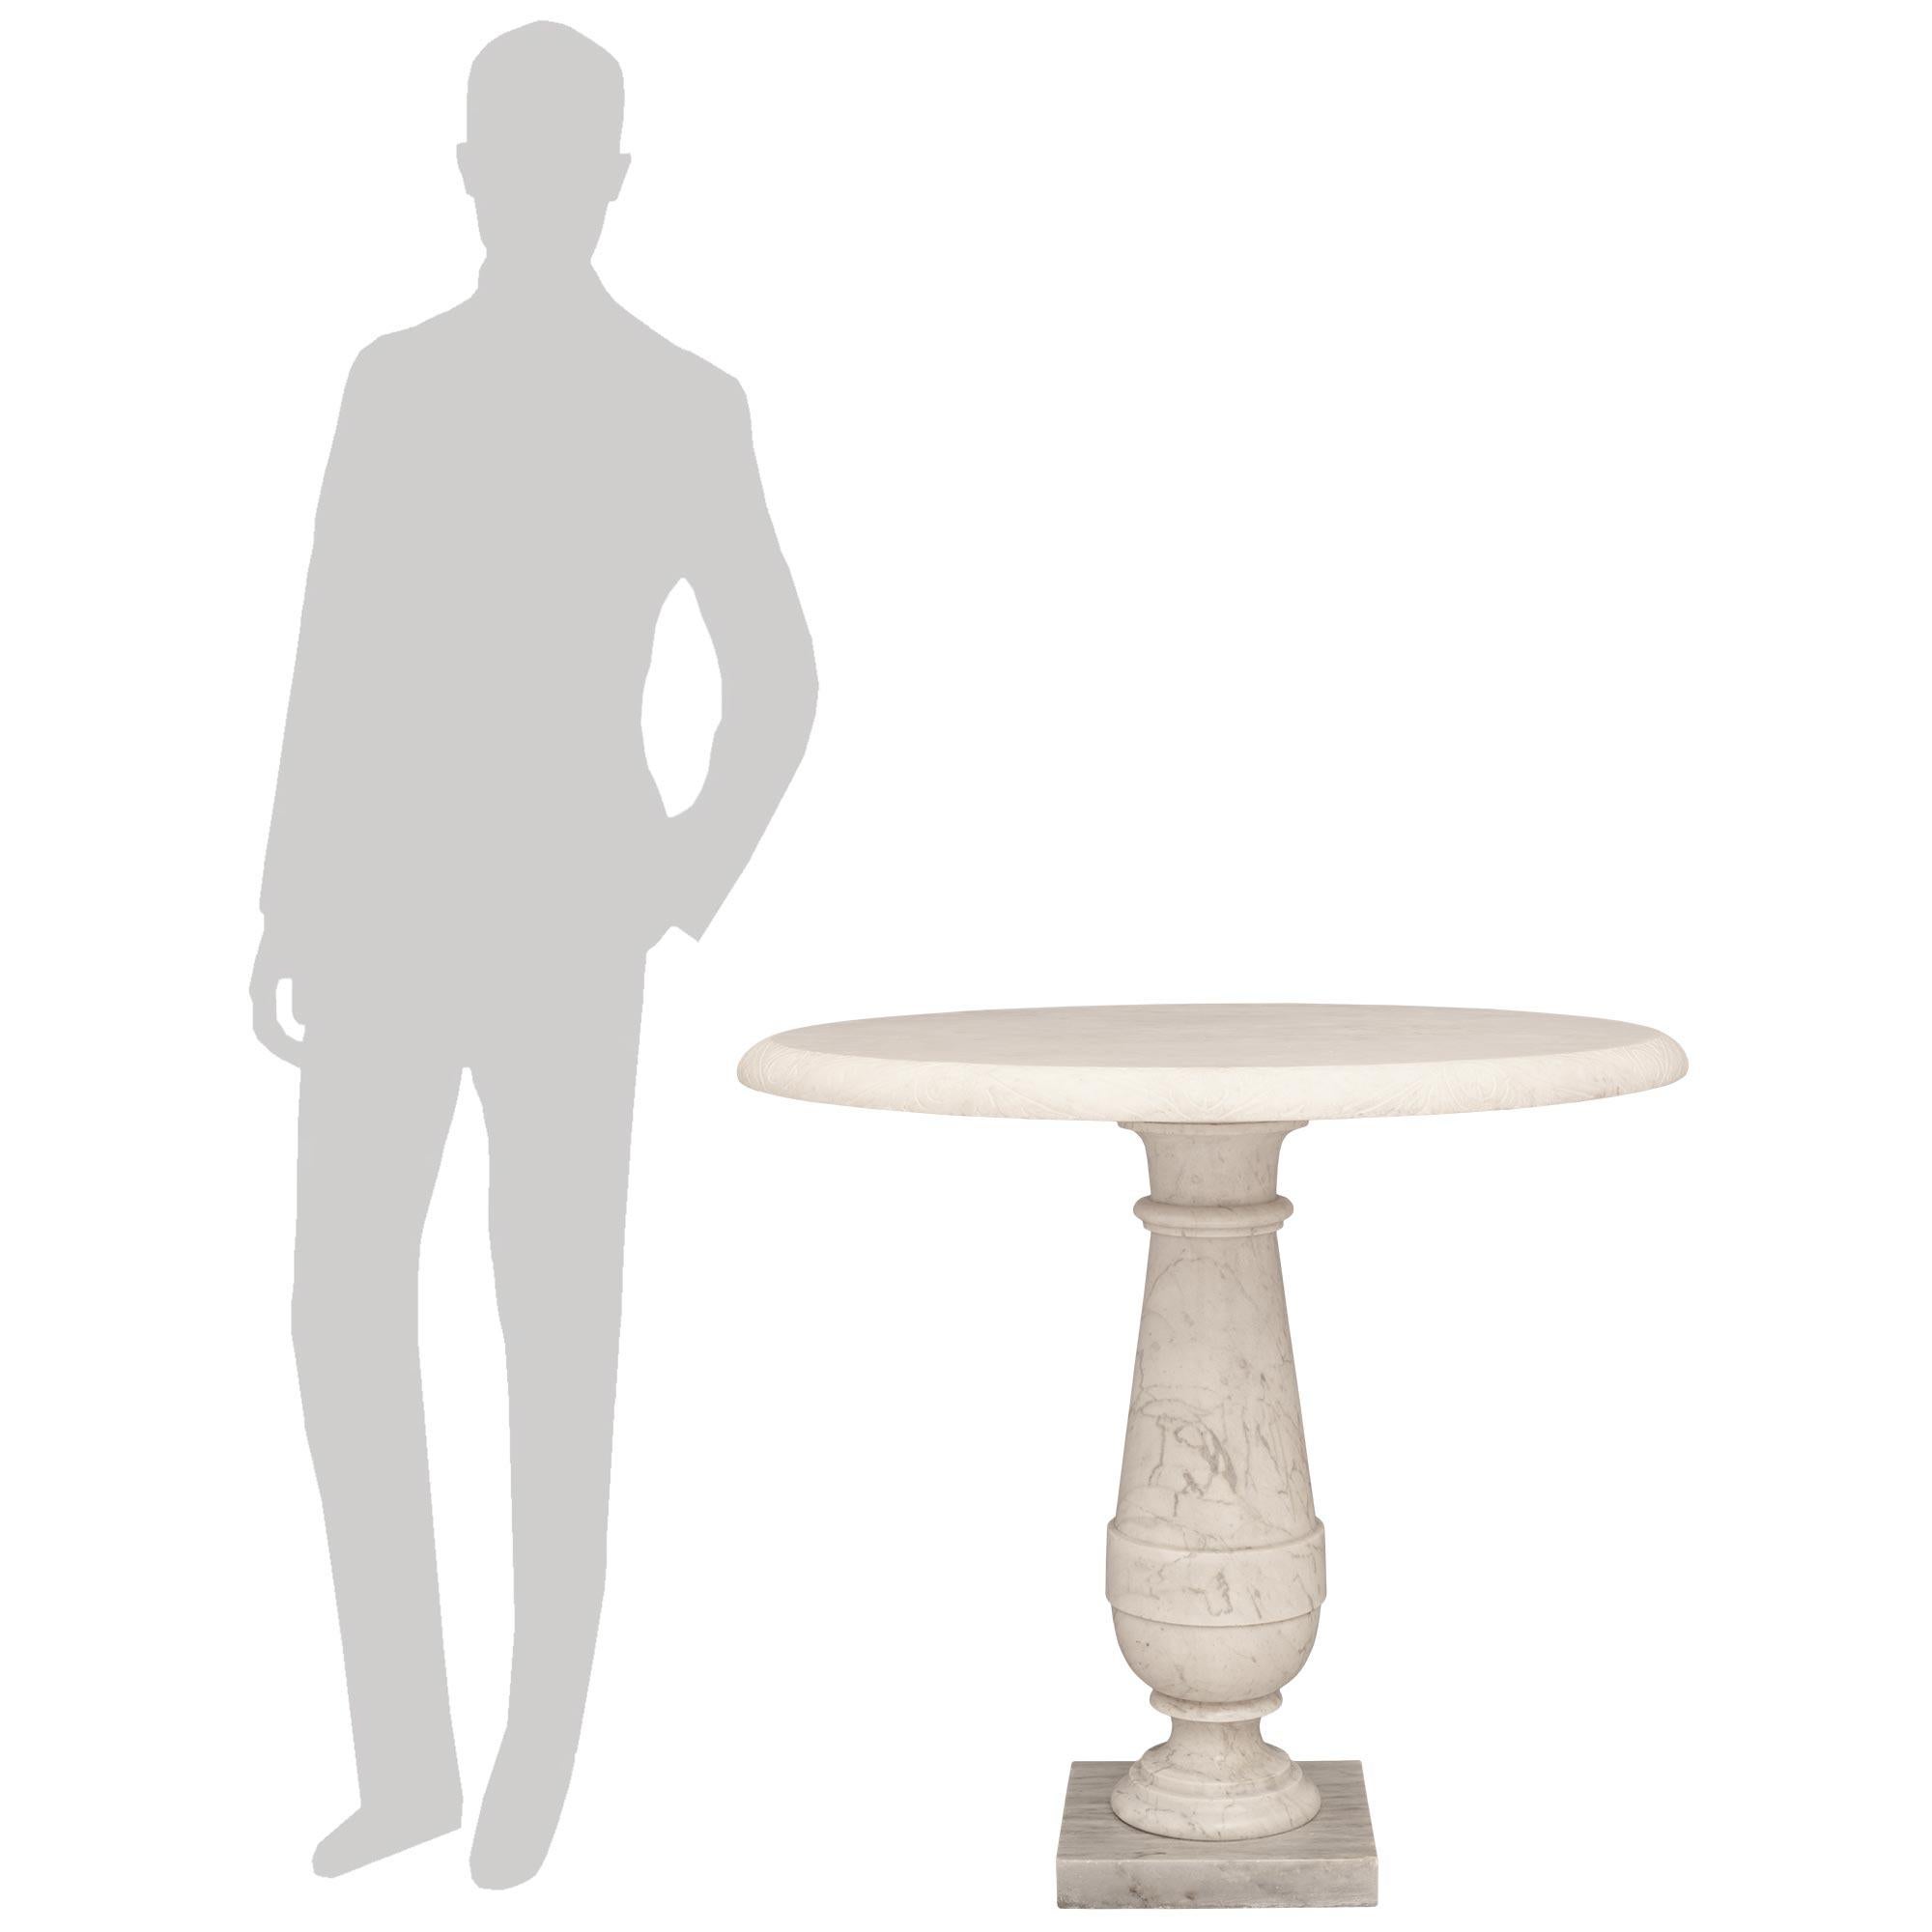 Ein attraktives Paar italienischer neoklassizistischer Tische aus weißem Carrara-Marmor aus dem 19. Die Tische stehen auf einem quadratischen, grau-weiß geäderten Marmorsockel unter den balusterförmigen Stützen mit gesprenkelten runden Sockeln. Die